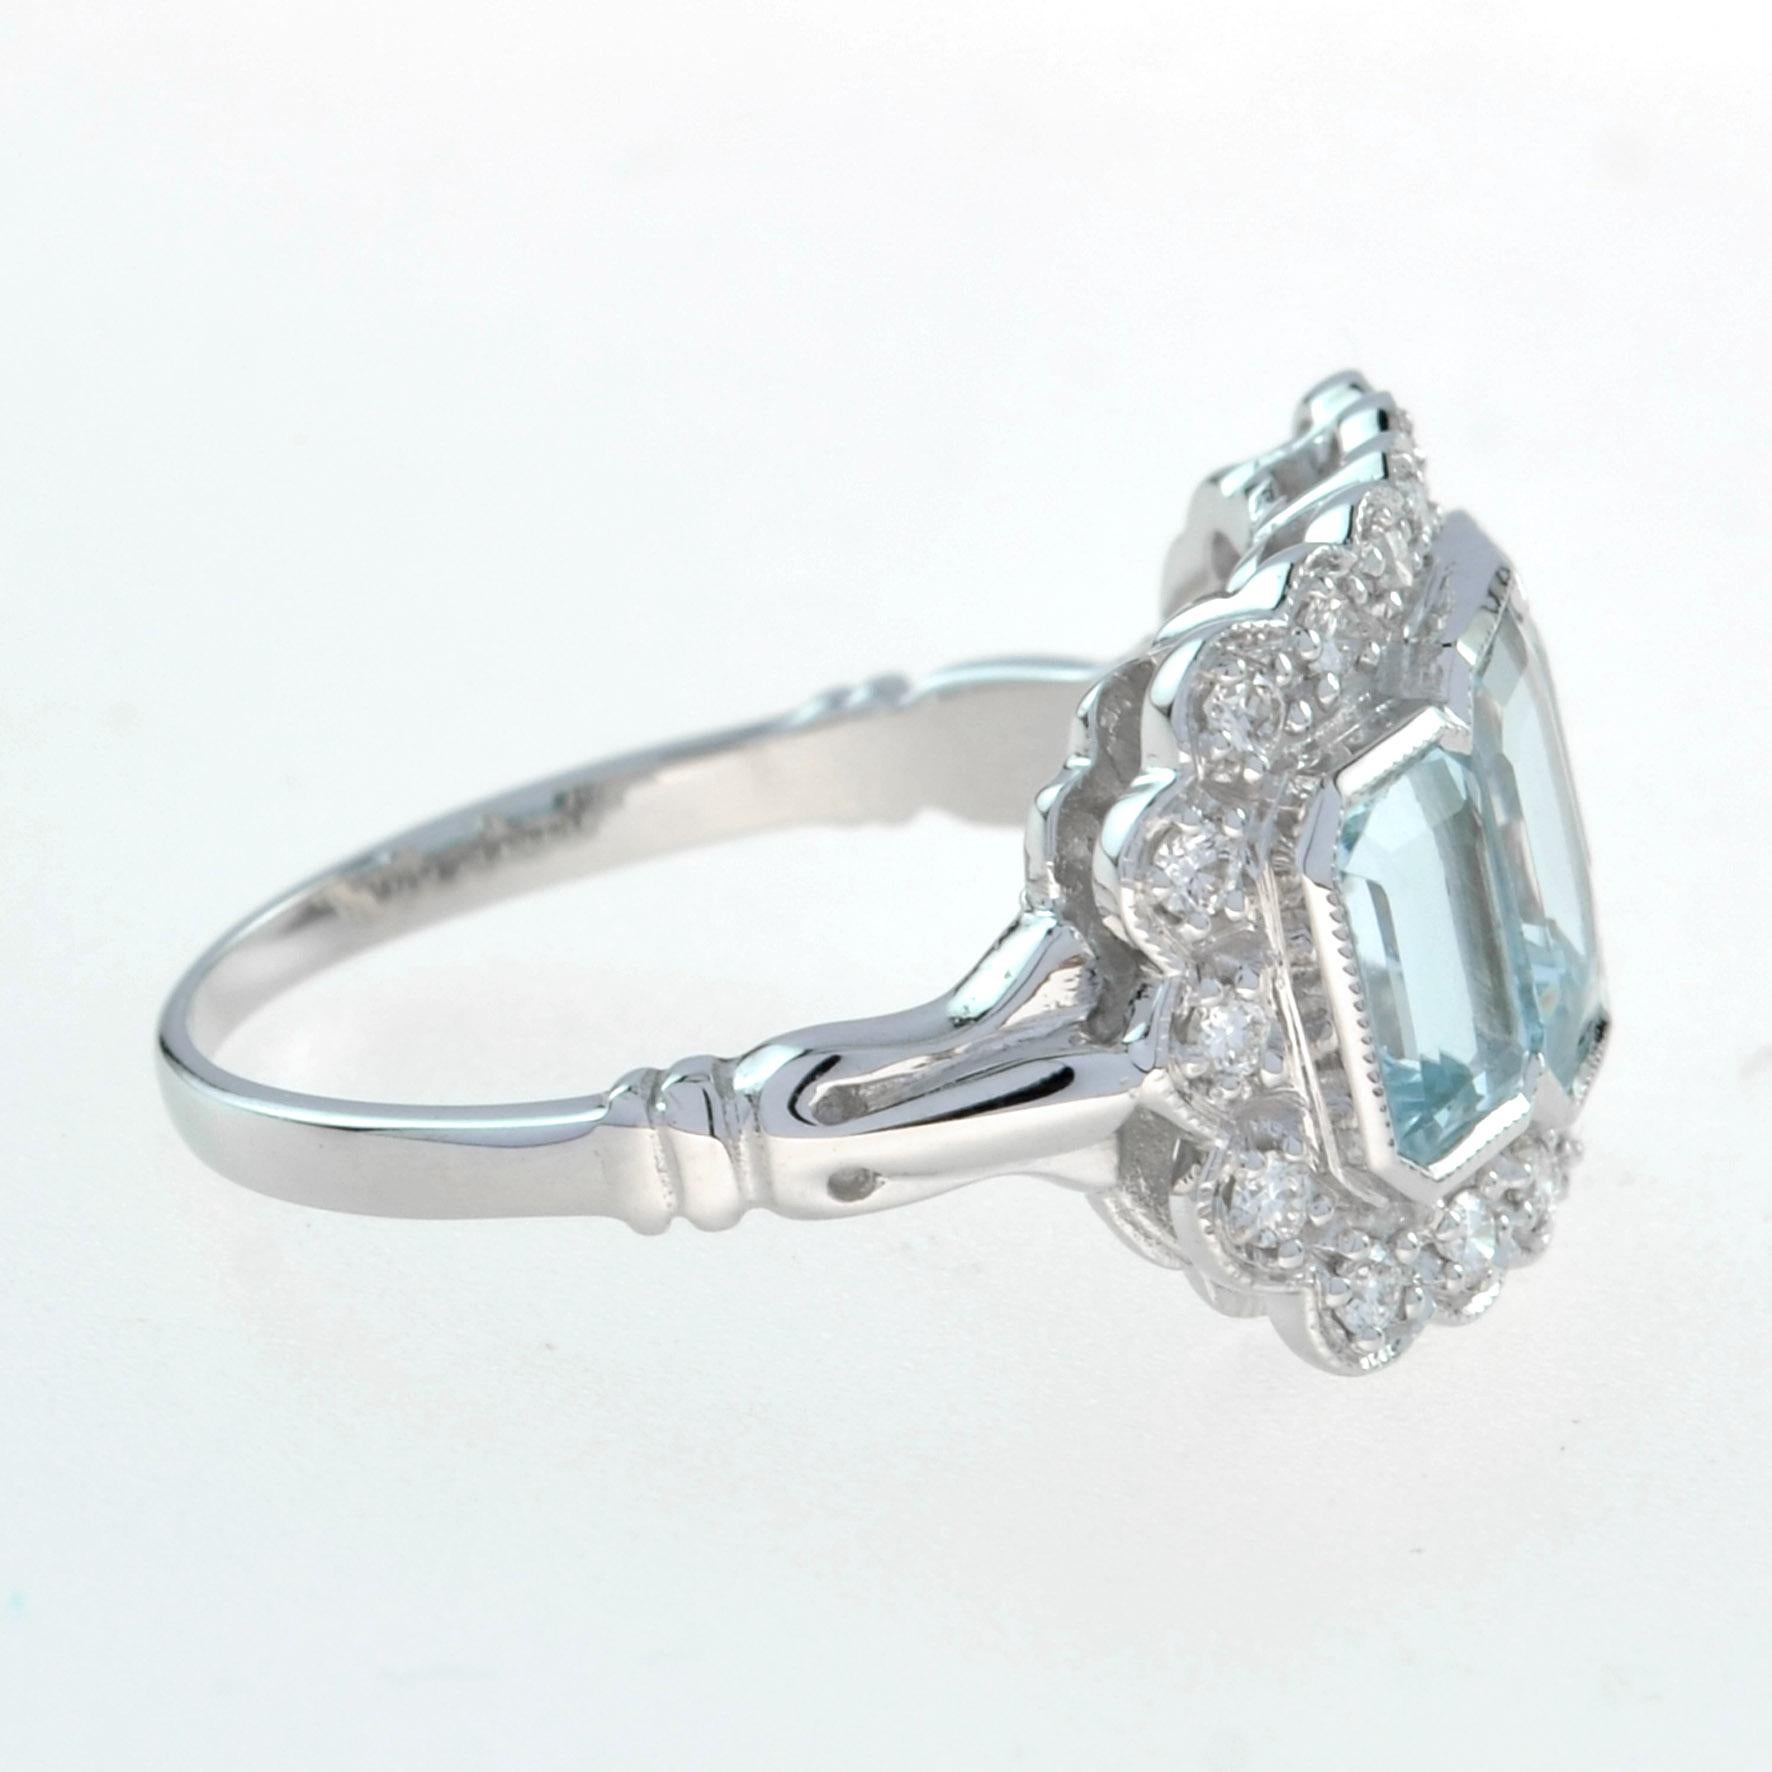 For Sale:  Emerald Cut Aquamarine and Diamond Three Stone Ring in Platinum950 3